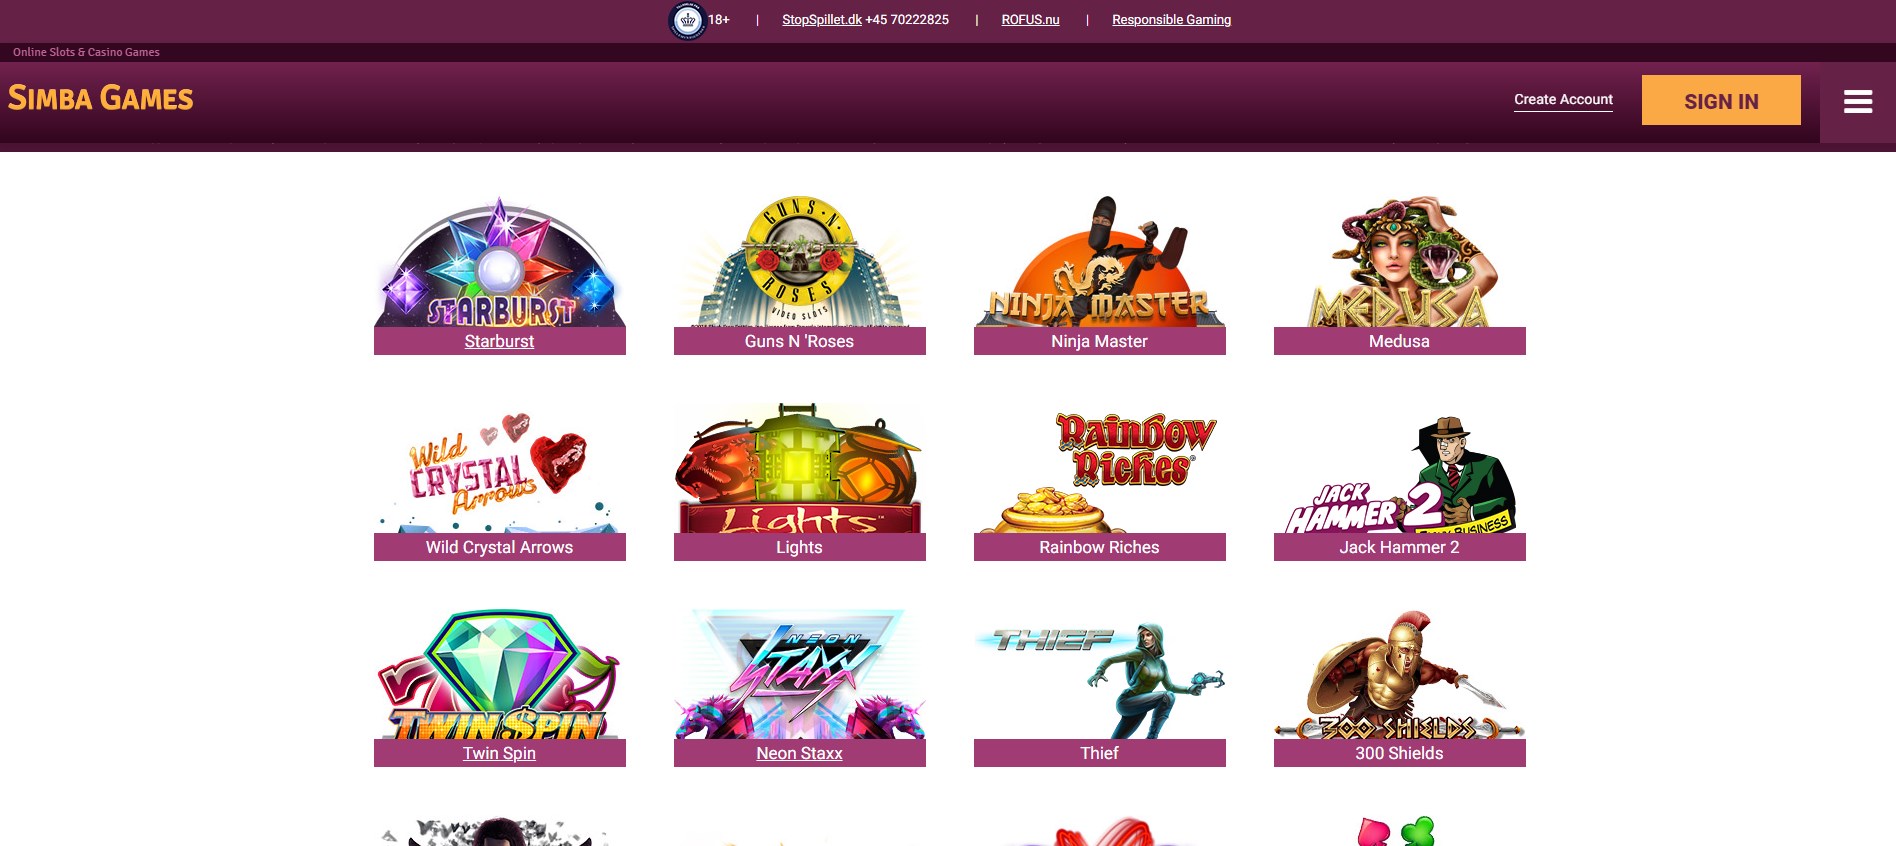 Simba Games DK Casino Games